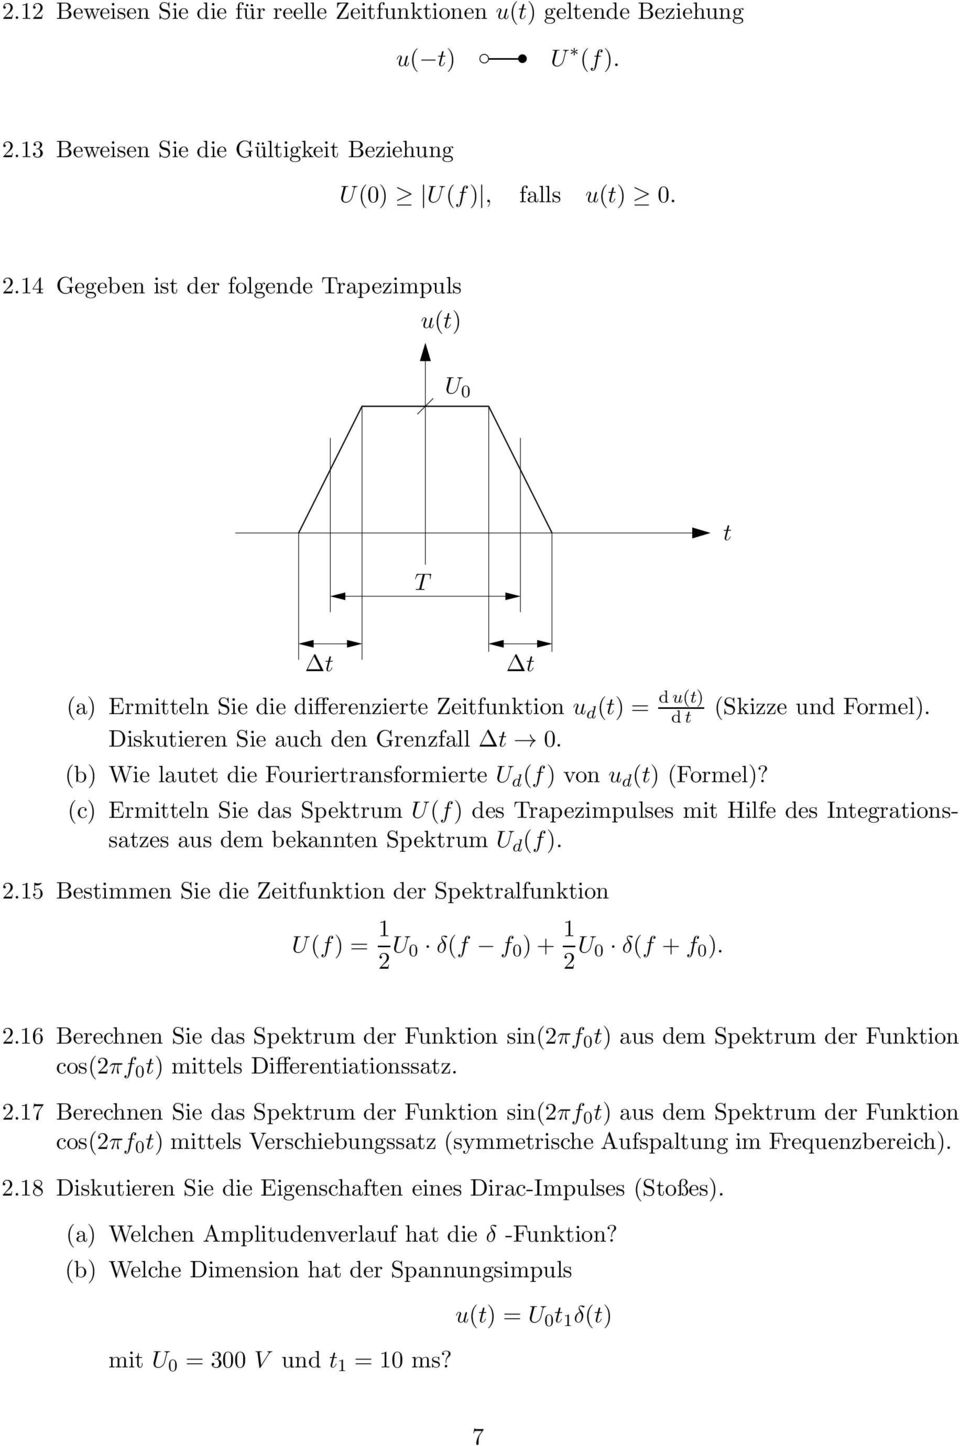 Diskuieren Sie auch den Grenzfall 0. (b) Wie laue die Fourierransformiere U d (f) von u d () (Formel)?